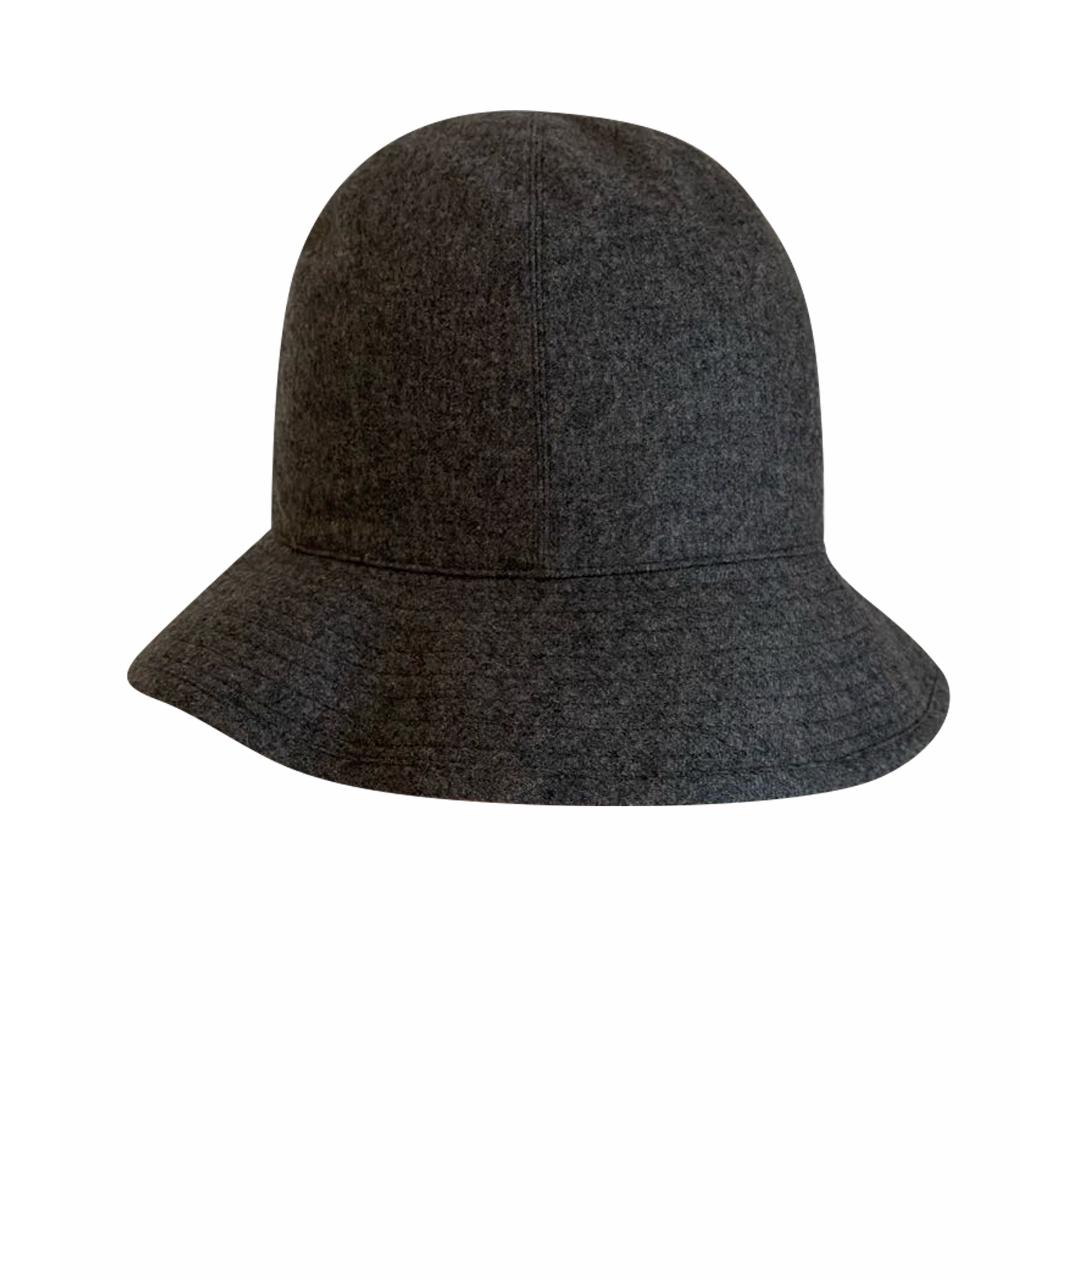 HERMES PRE-OWNED Антрацитовая кашемировая шляпа, фото 1